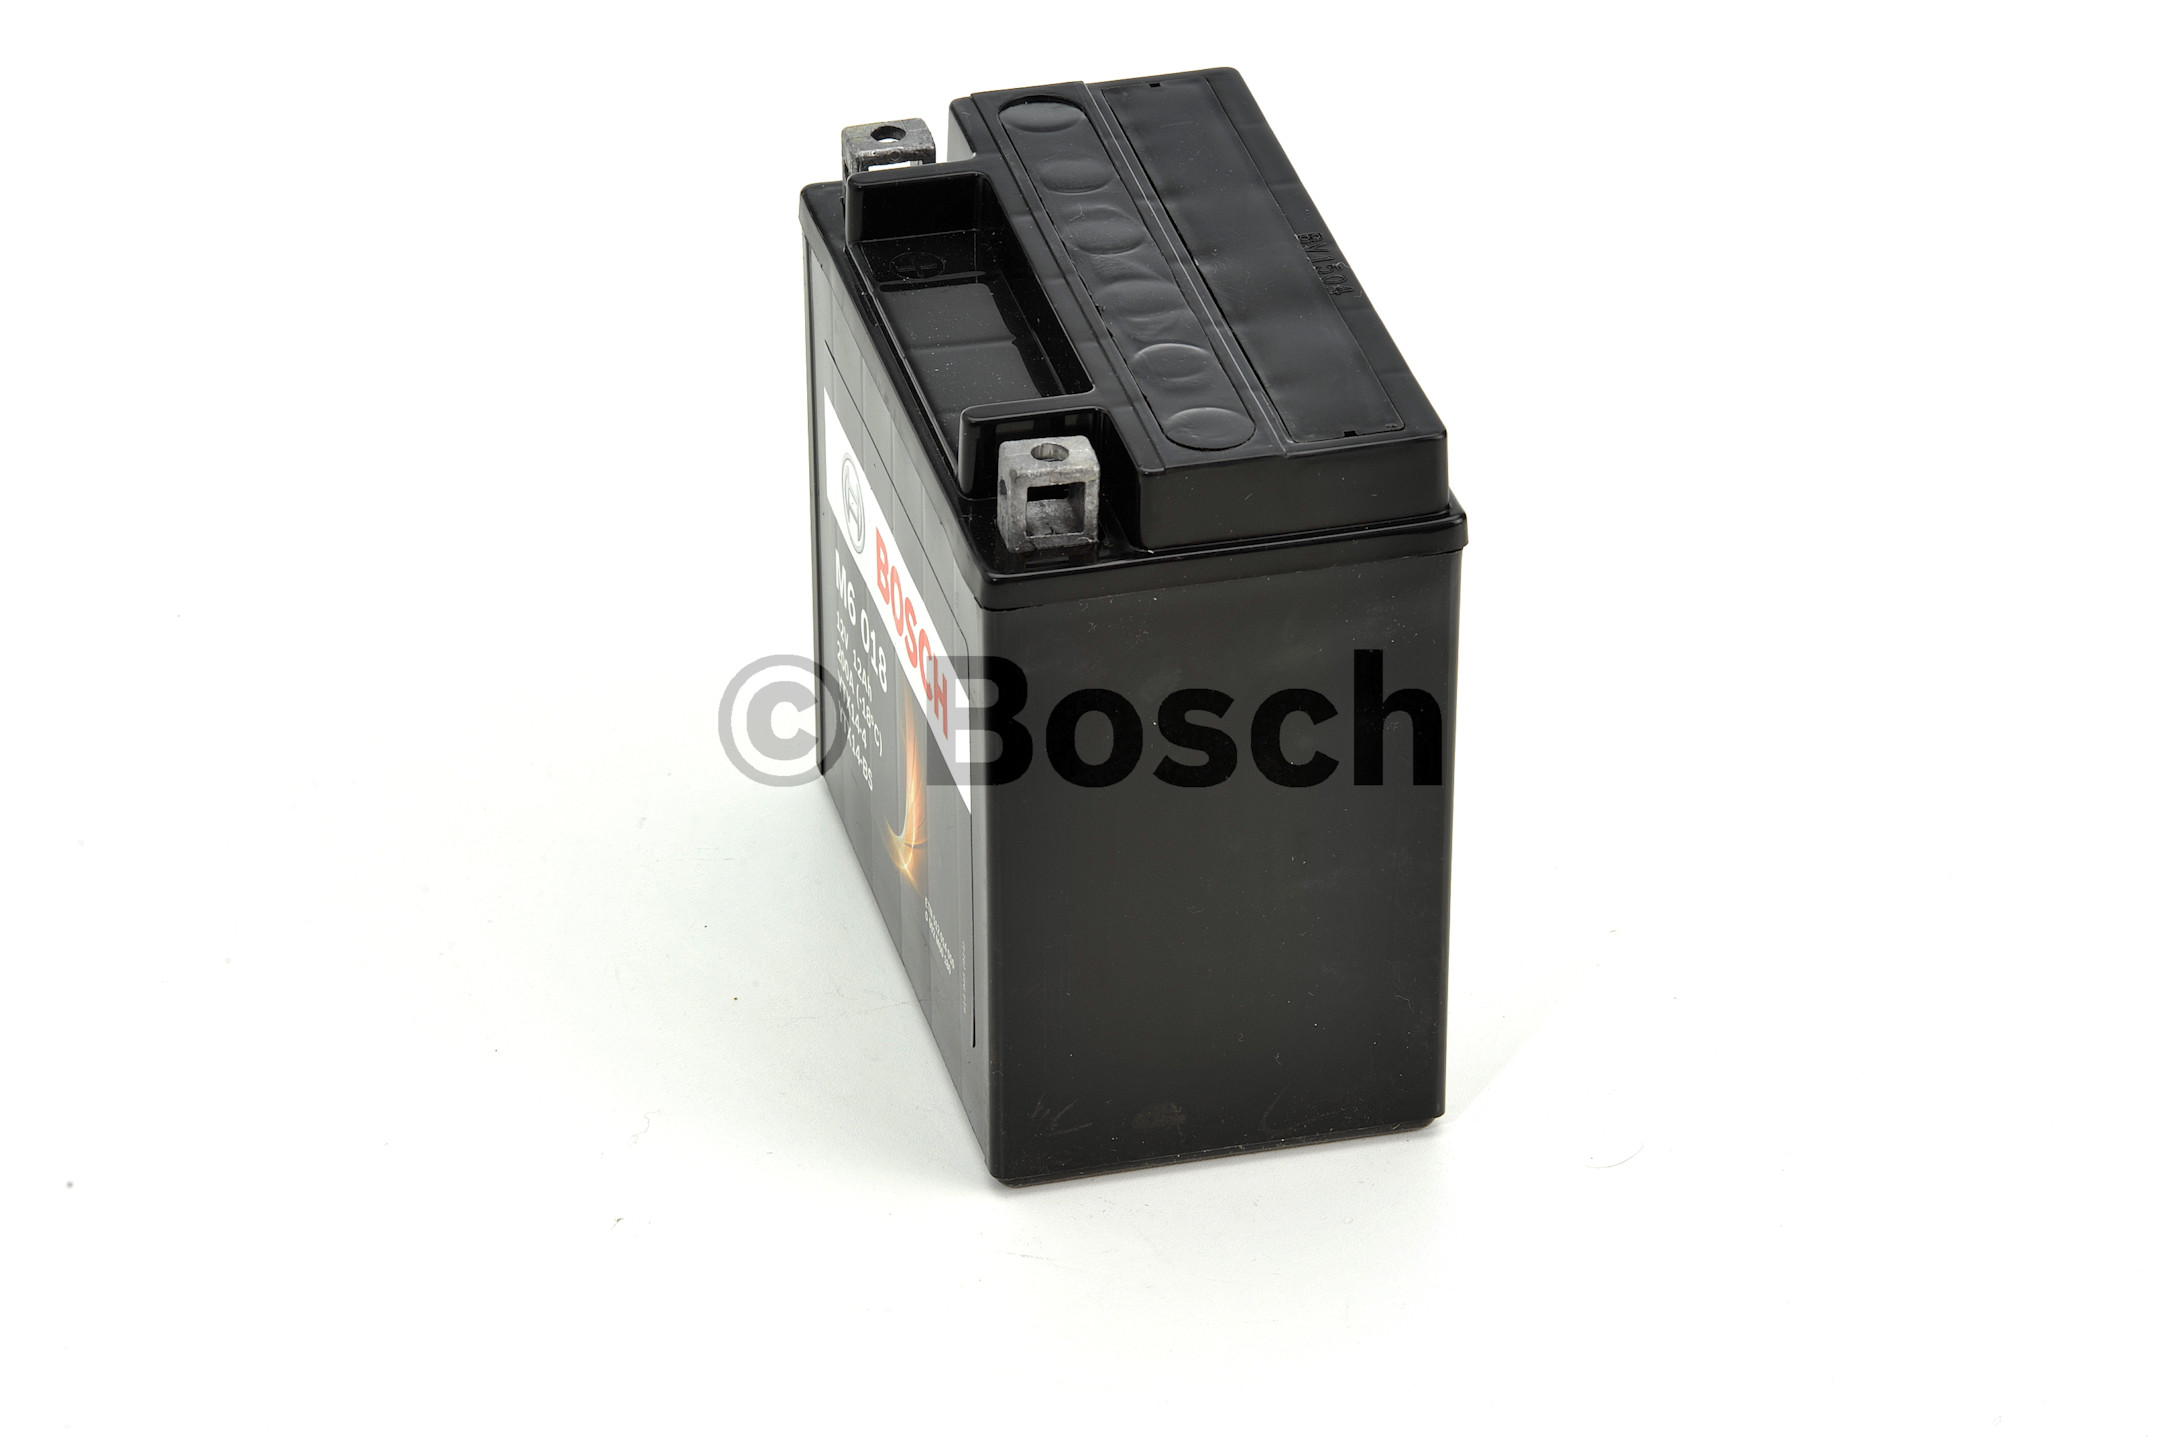 Motorradbatterie Bosch M6 12Ah 200A 0092M60180 M6018 